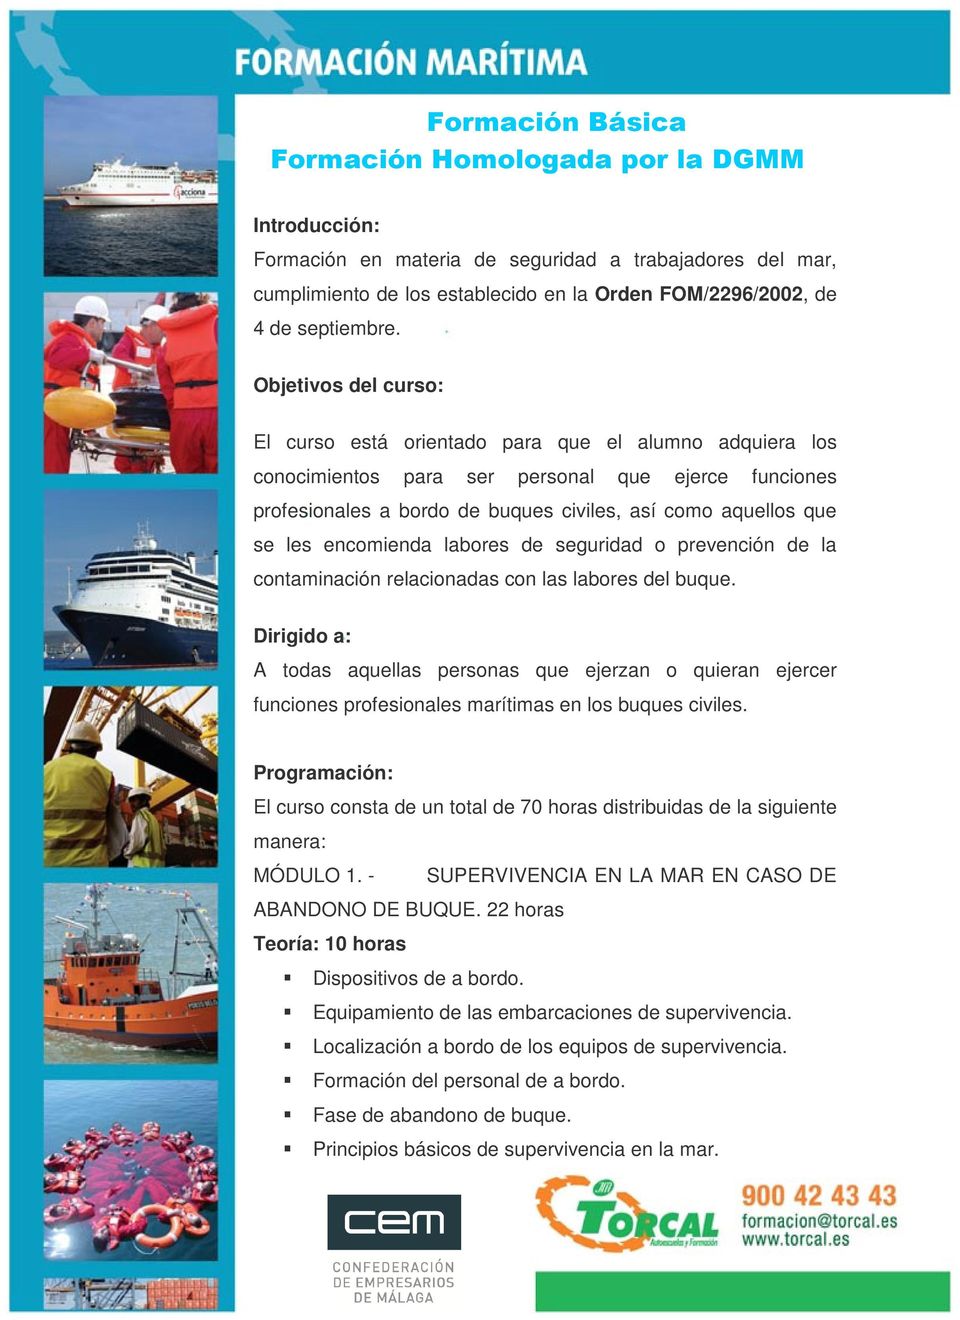 encomienda labores de seguridad o prevención de la contaminación relacionadas con las labores del buque.